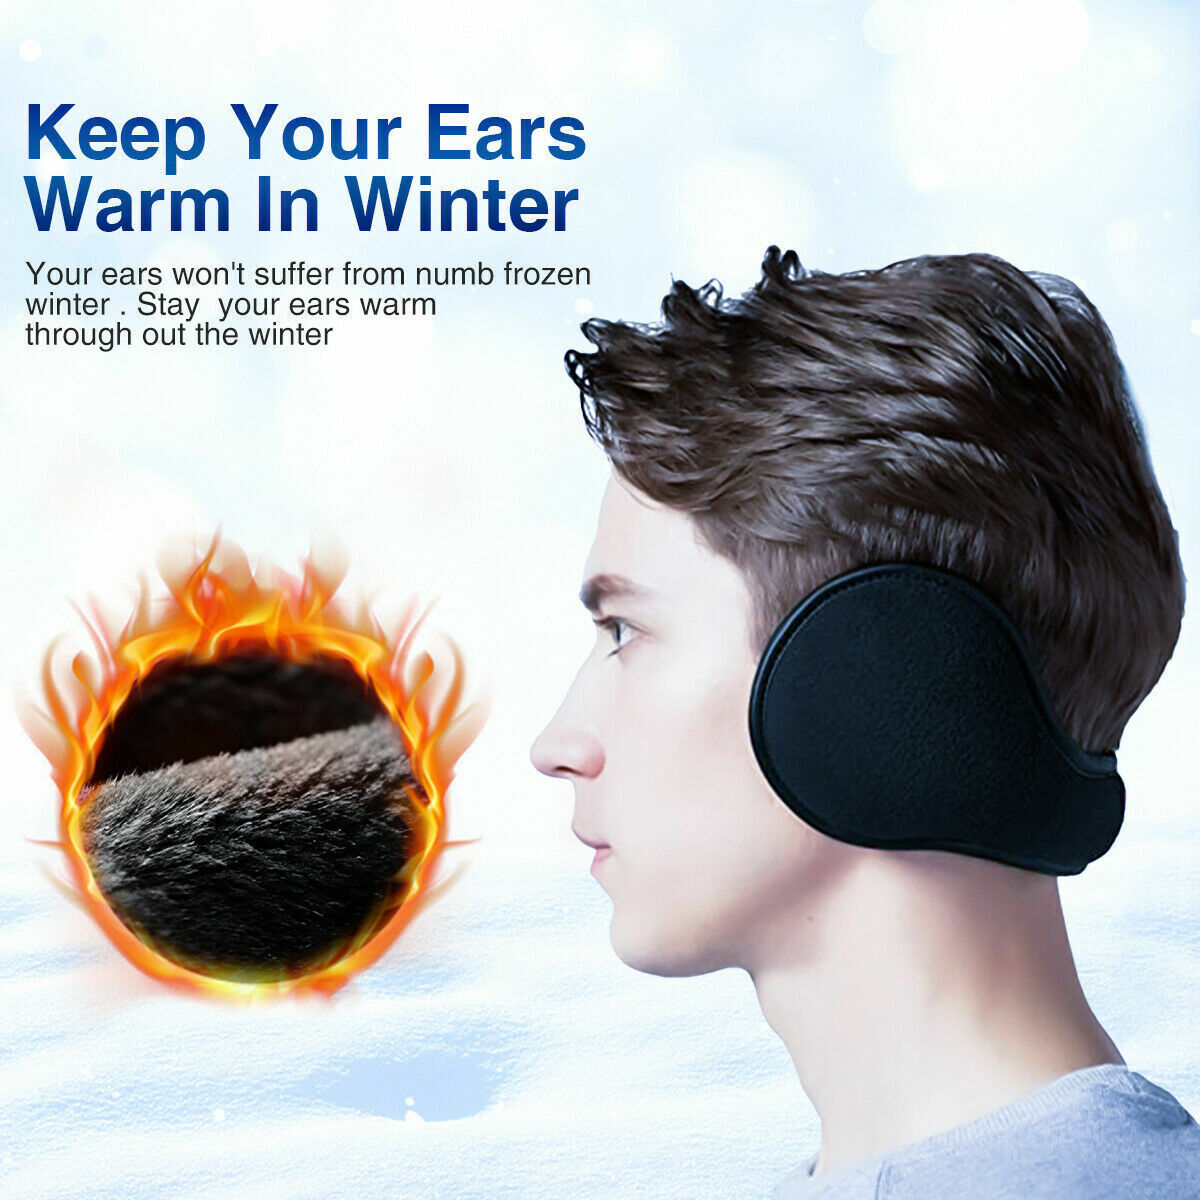 2 x Men Women Ear Muffs Winter Ear warmers Fleece Earwarmer Behind the Head Band Unbranded Does not apply - фотография #7